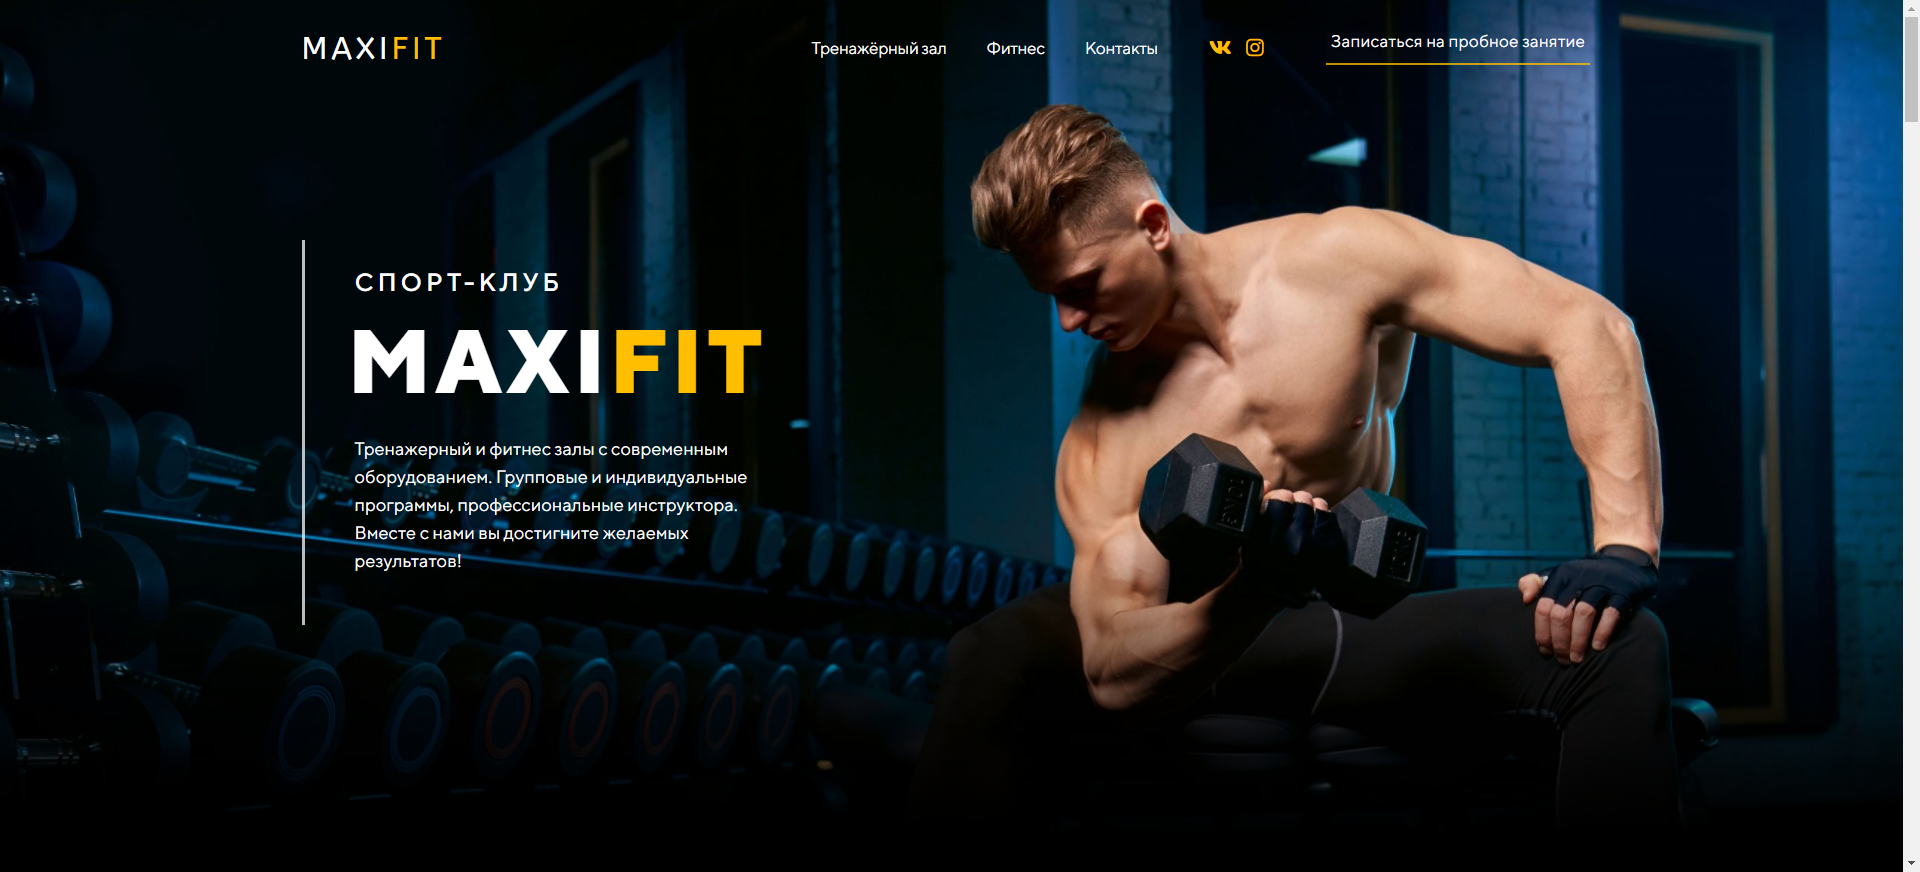 MAXIFIT — Тренажерный и фитнес залы с современным оборудованием